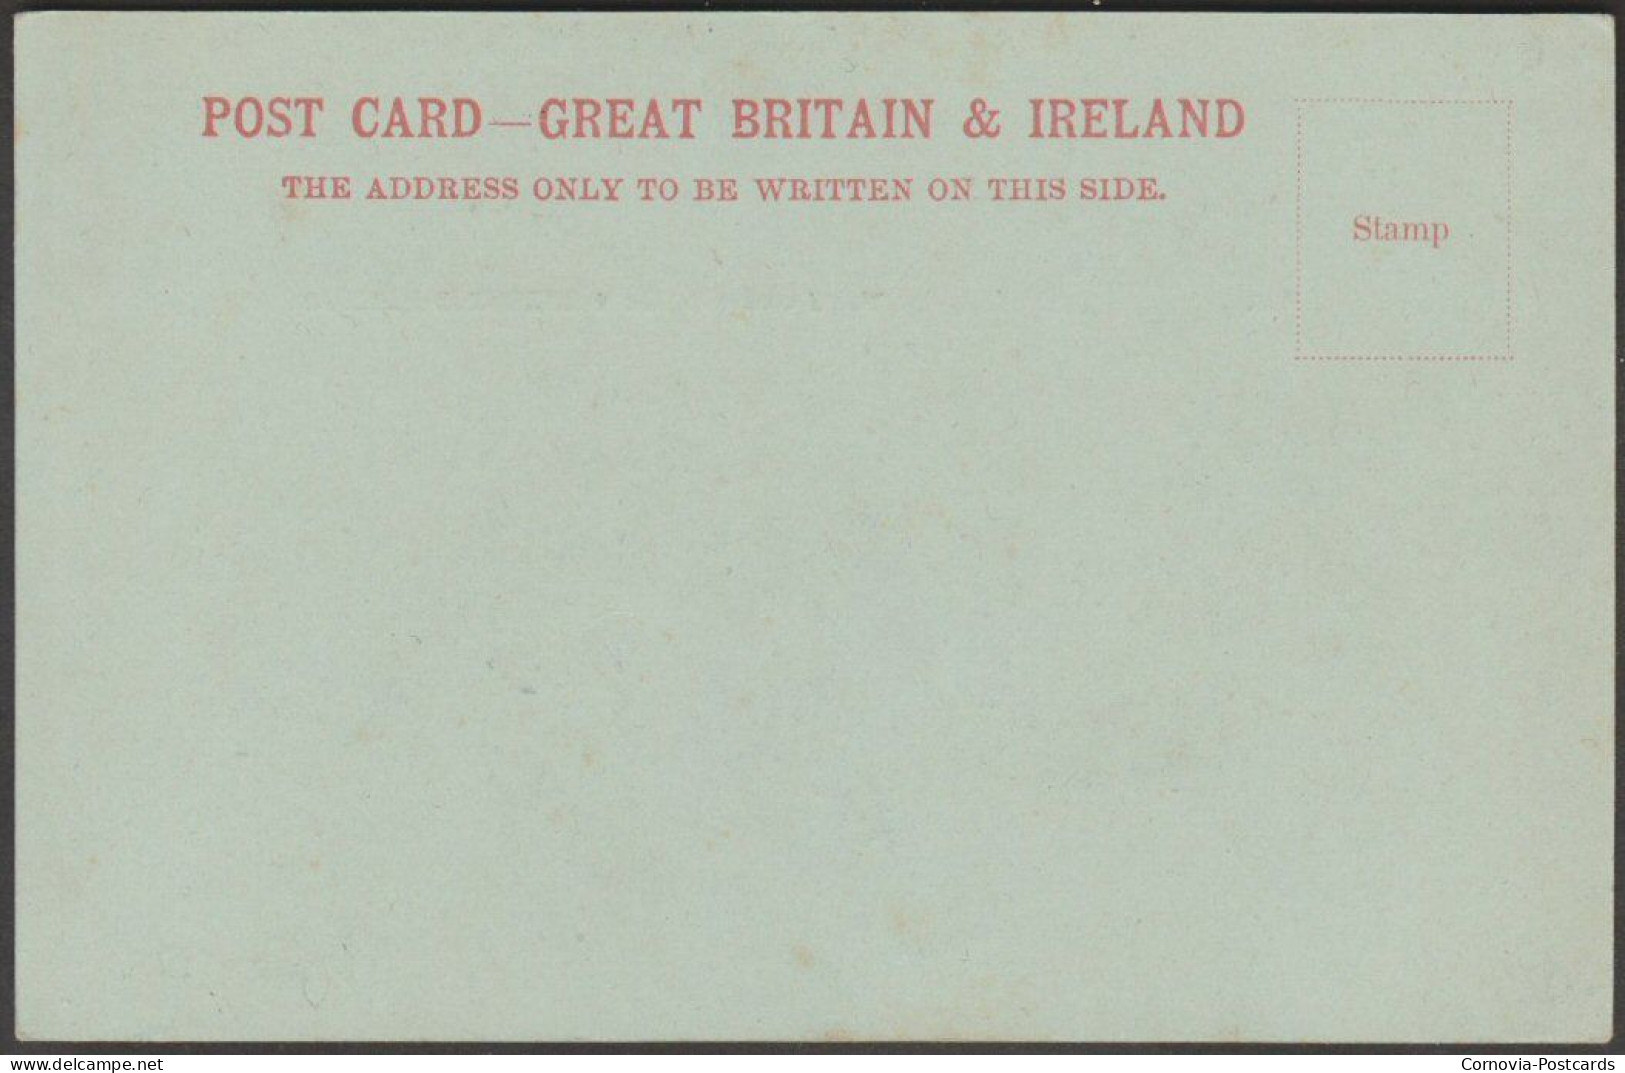 Camden Crescent & Hedgemead Park, Bath, Somerset, C.1900 - Blum & Degen Postcard - Bath